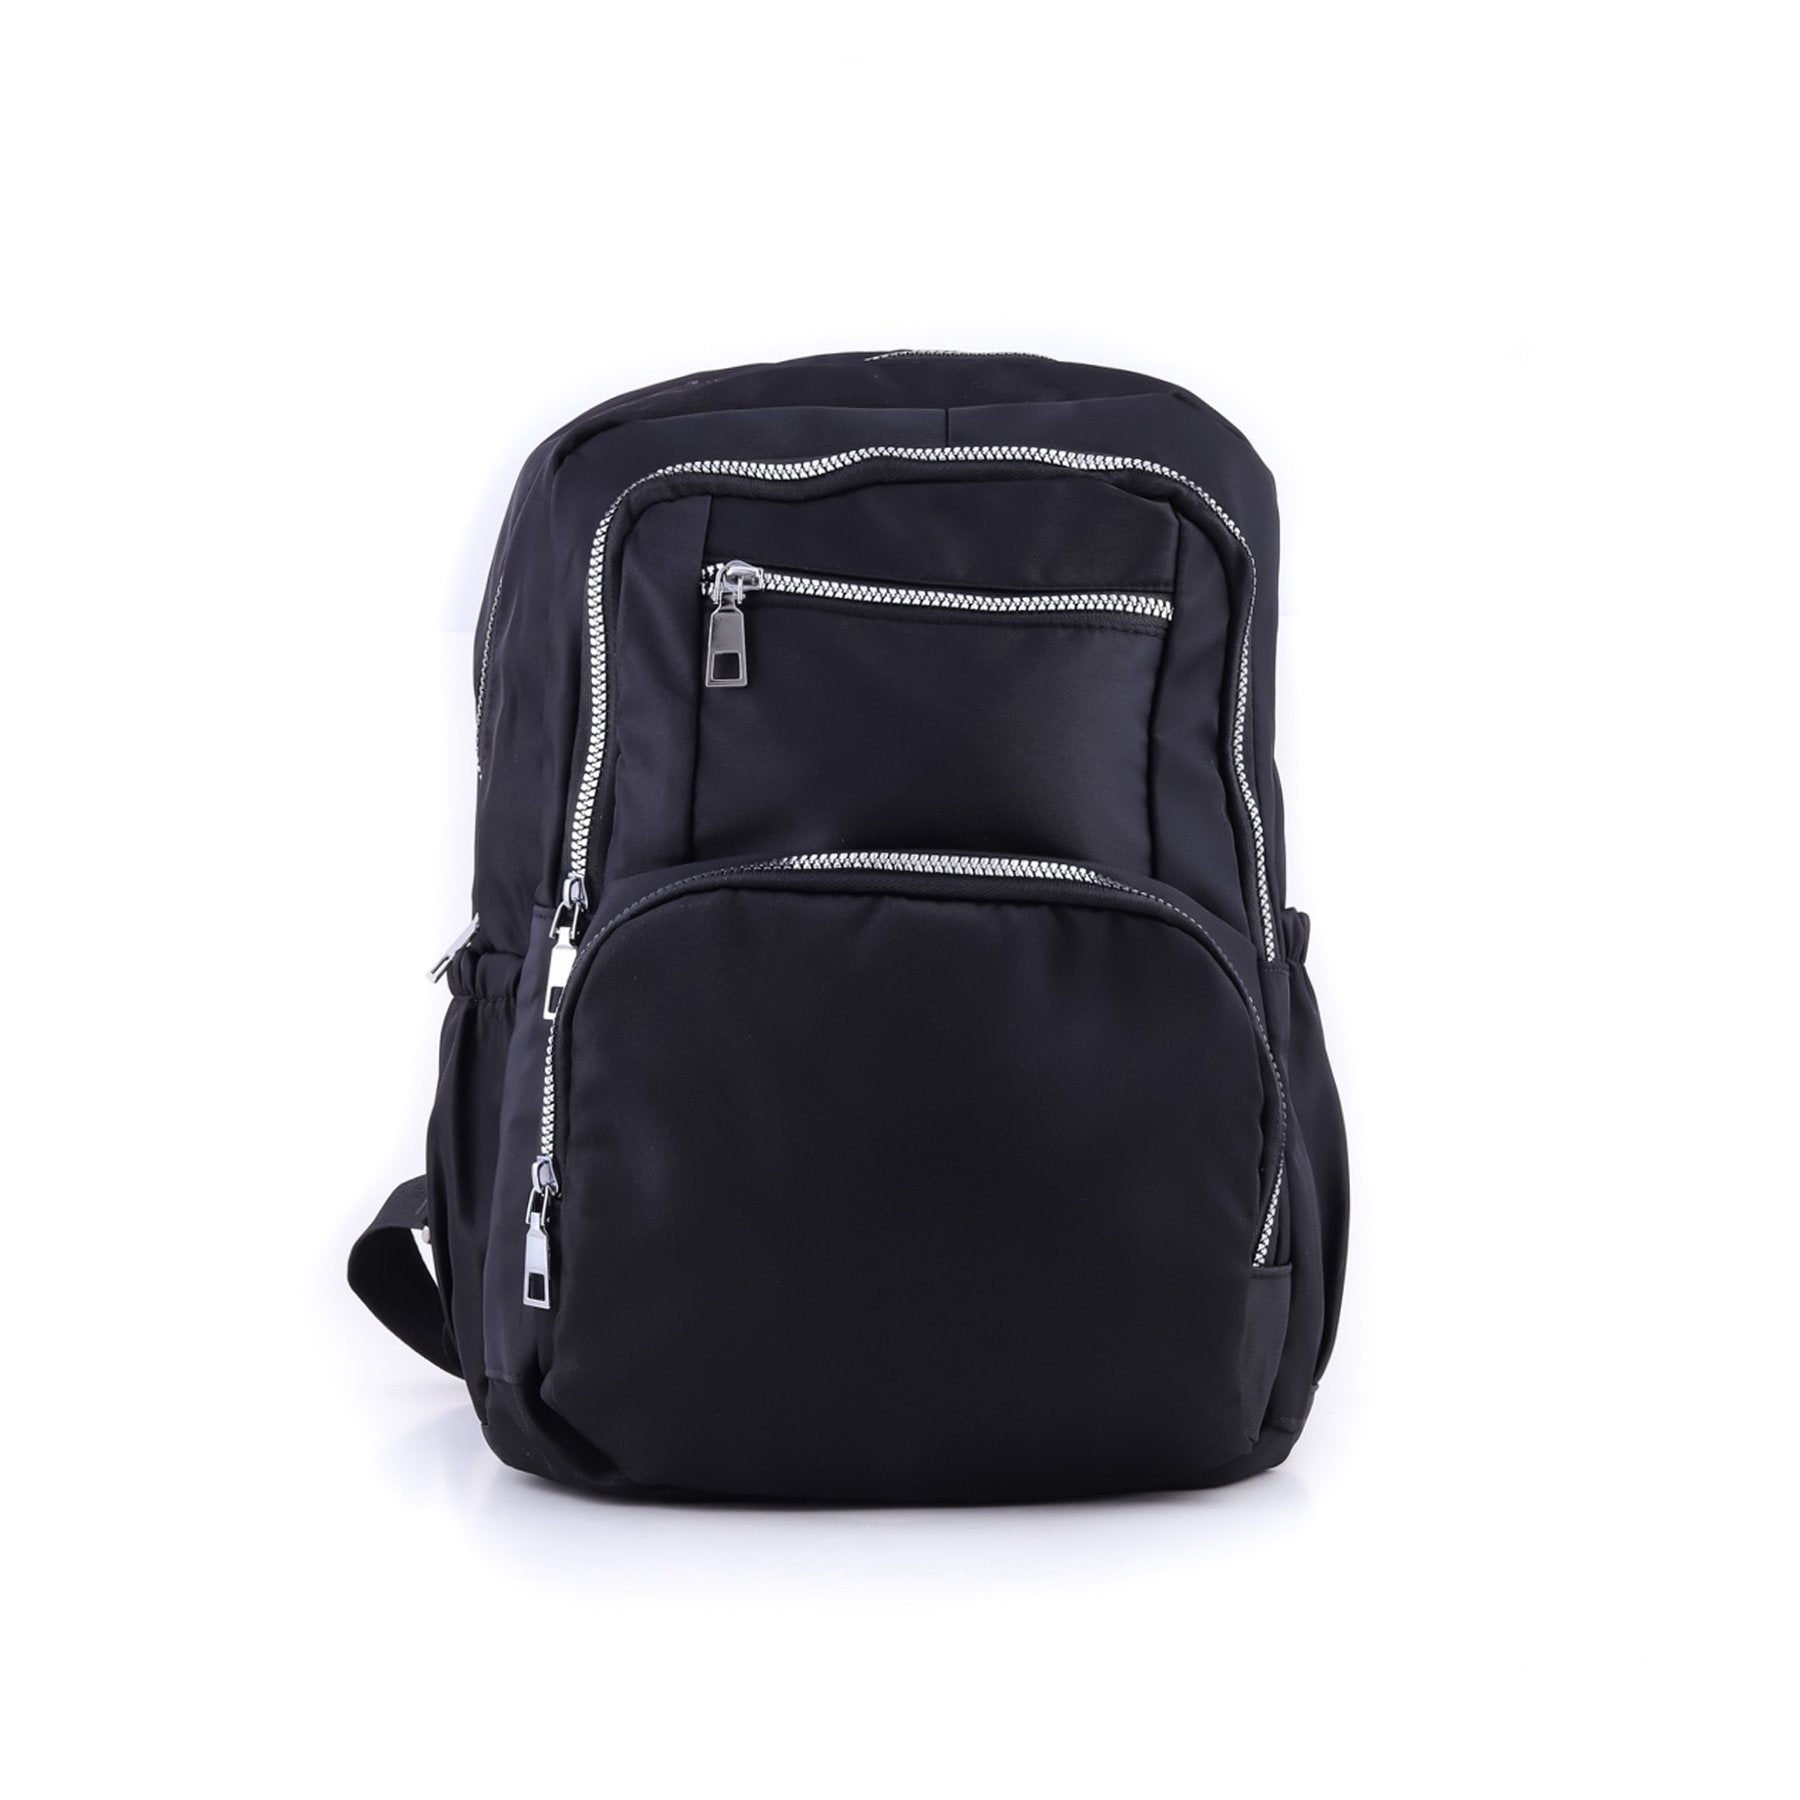 Black Color Backpack P47184